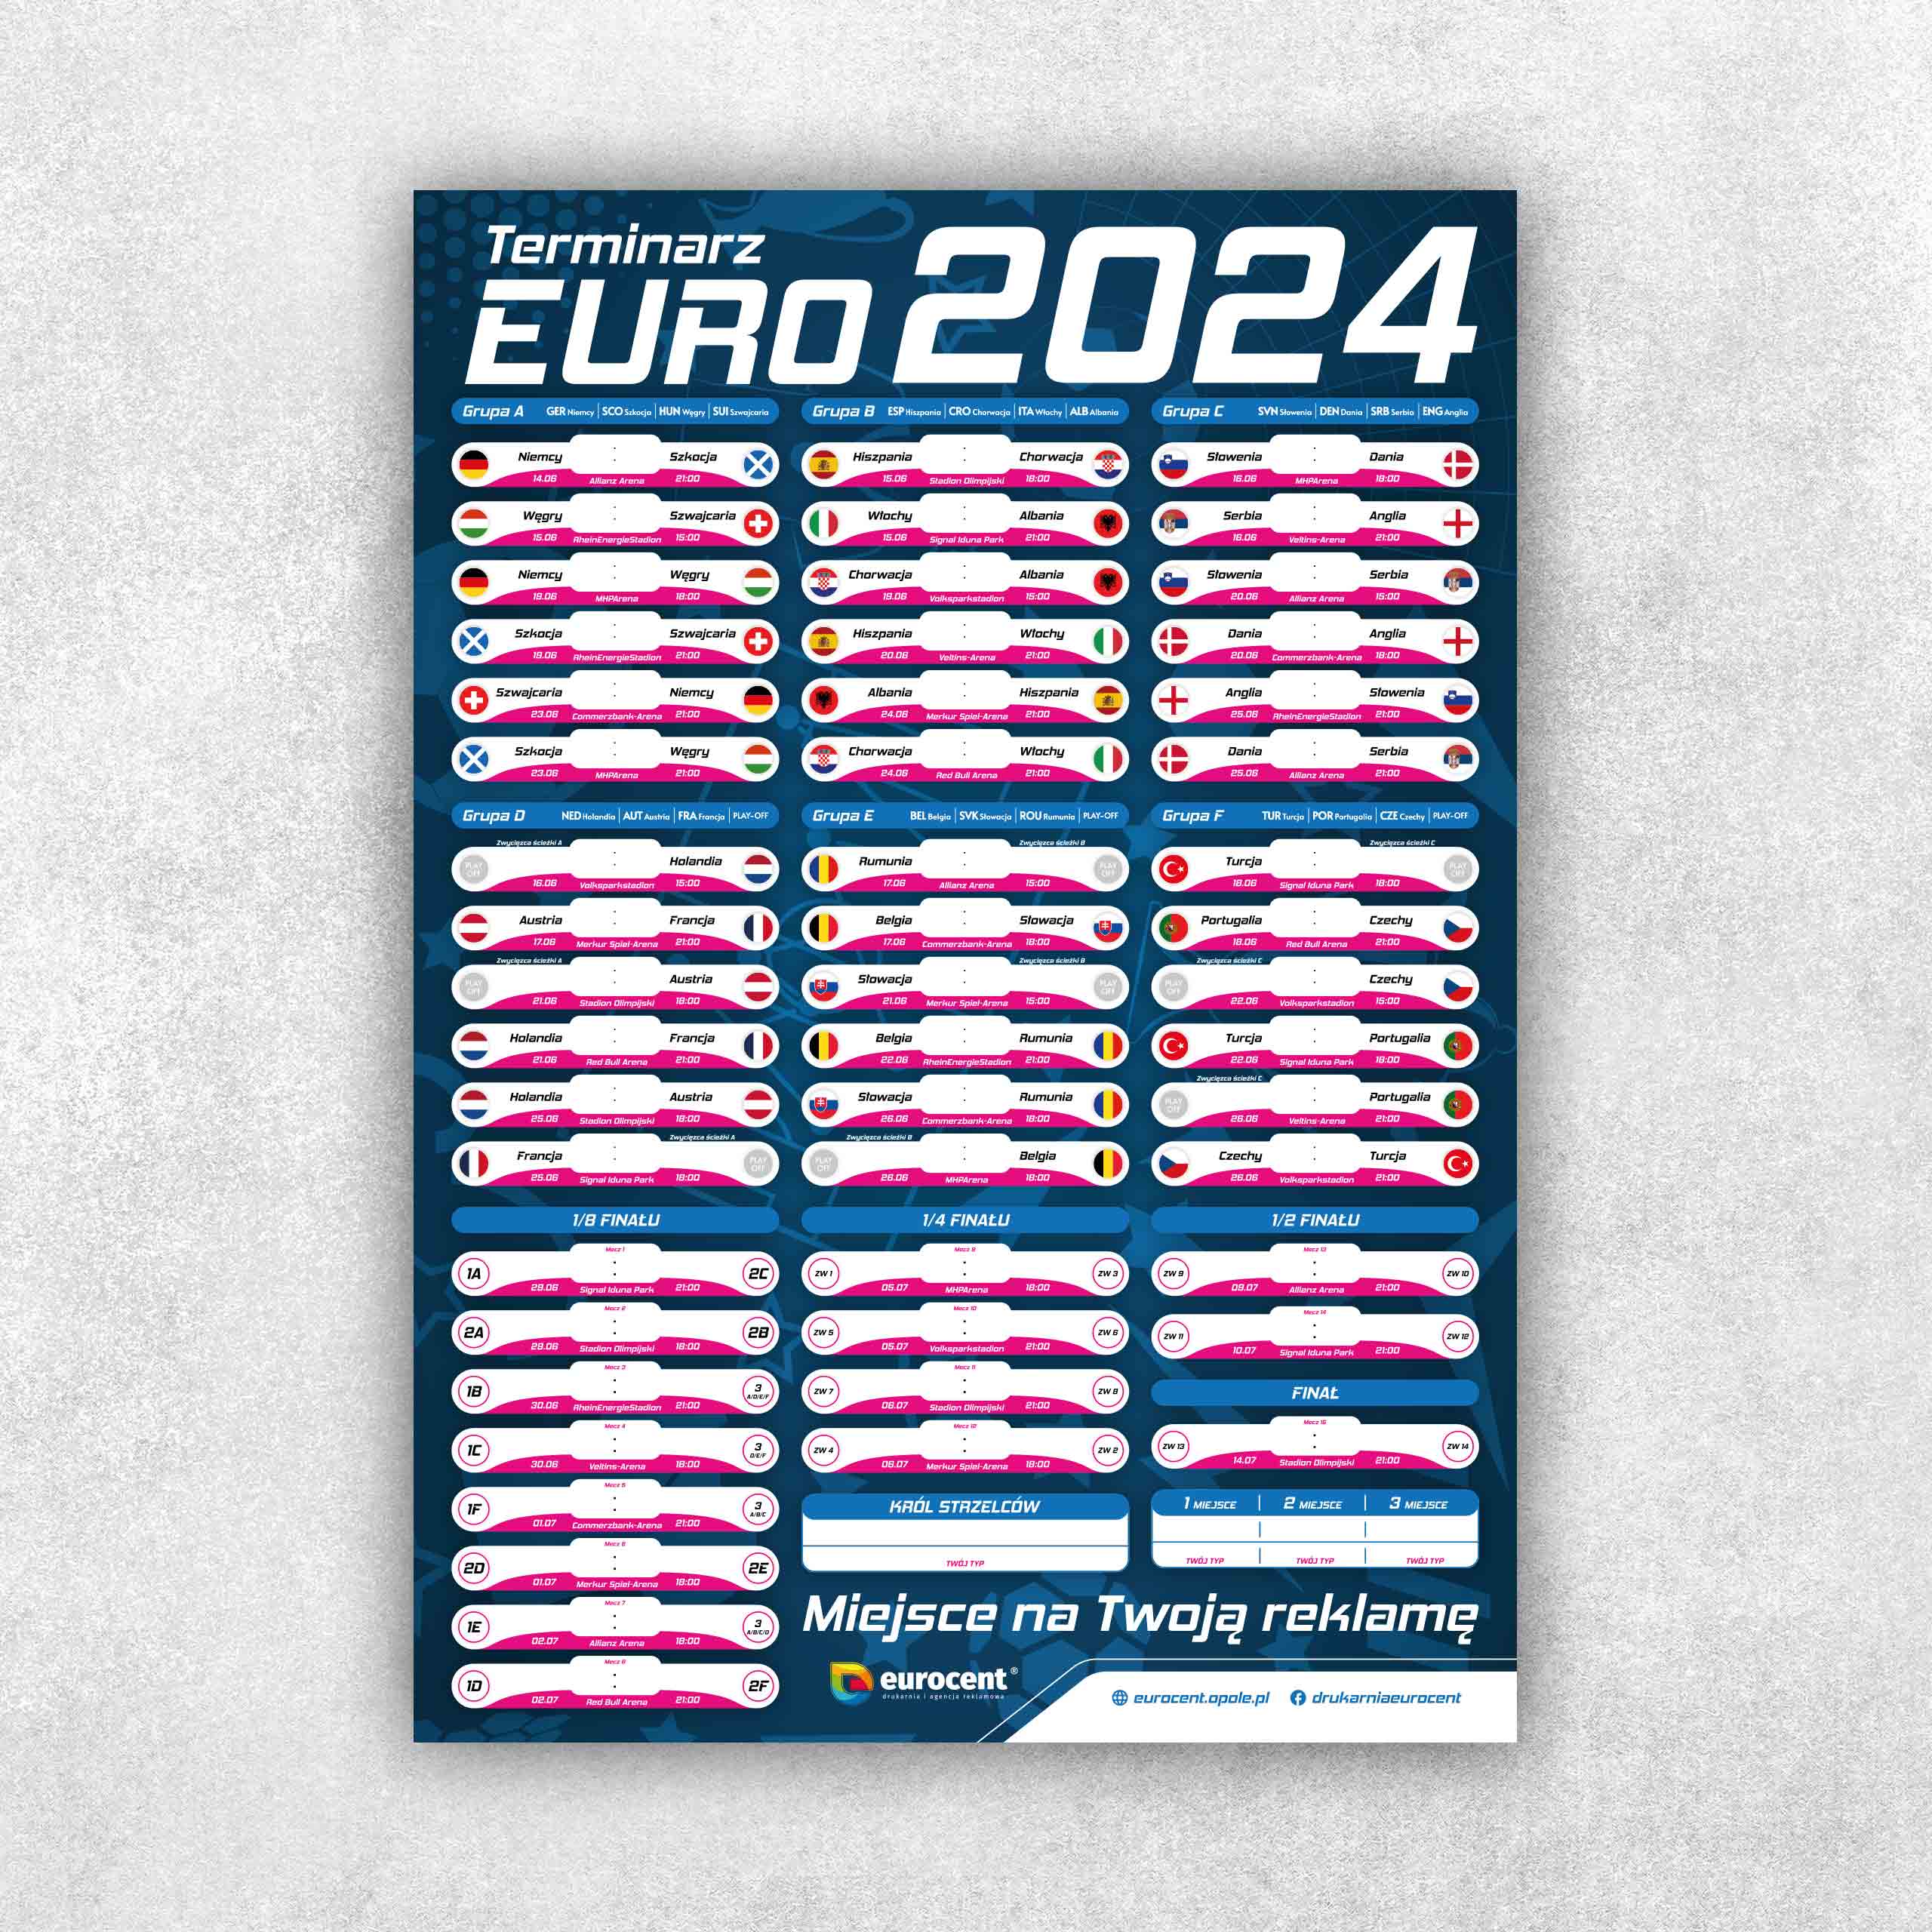 Piłkarski terminarz mistrzostw Europy 2024 z logo